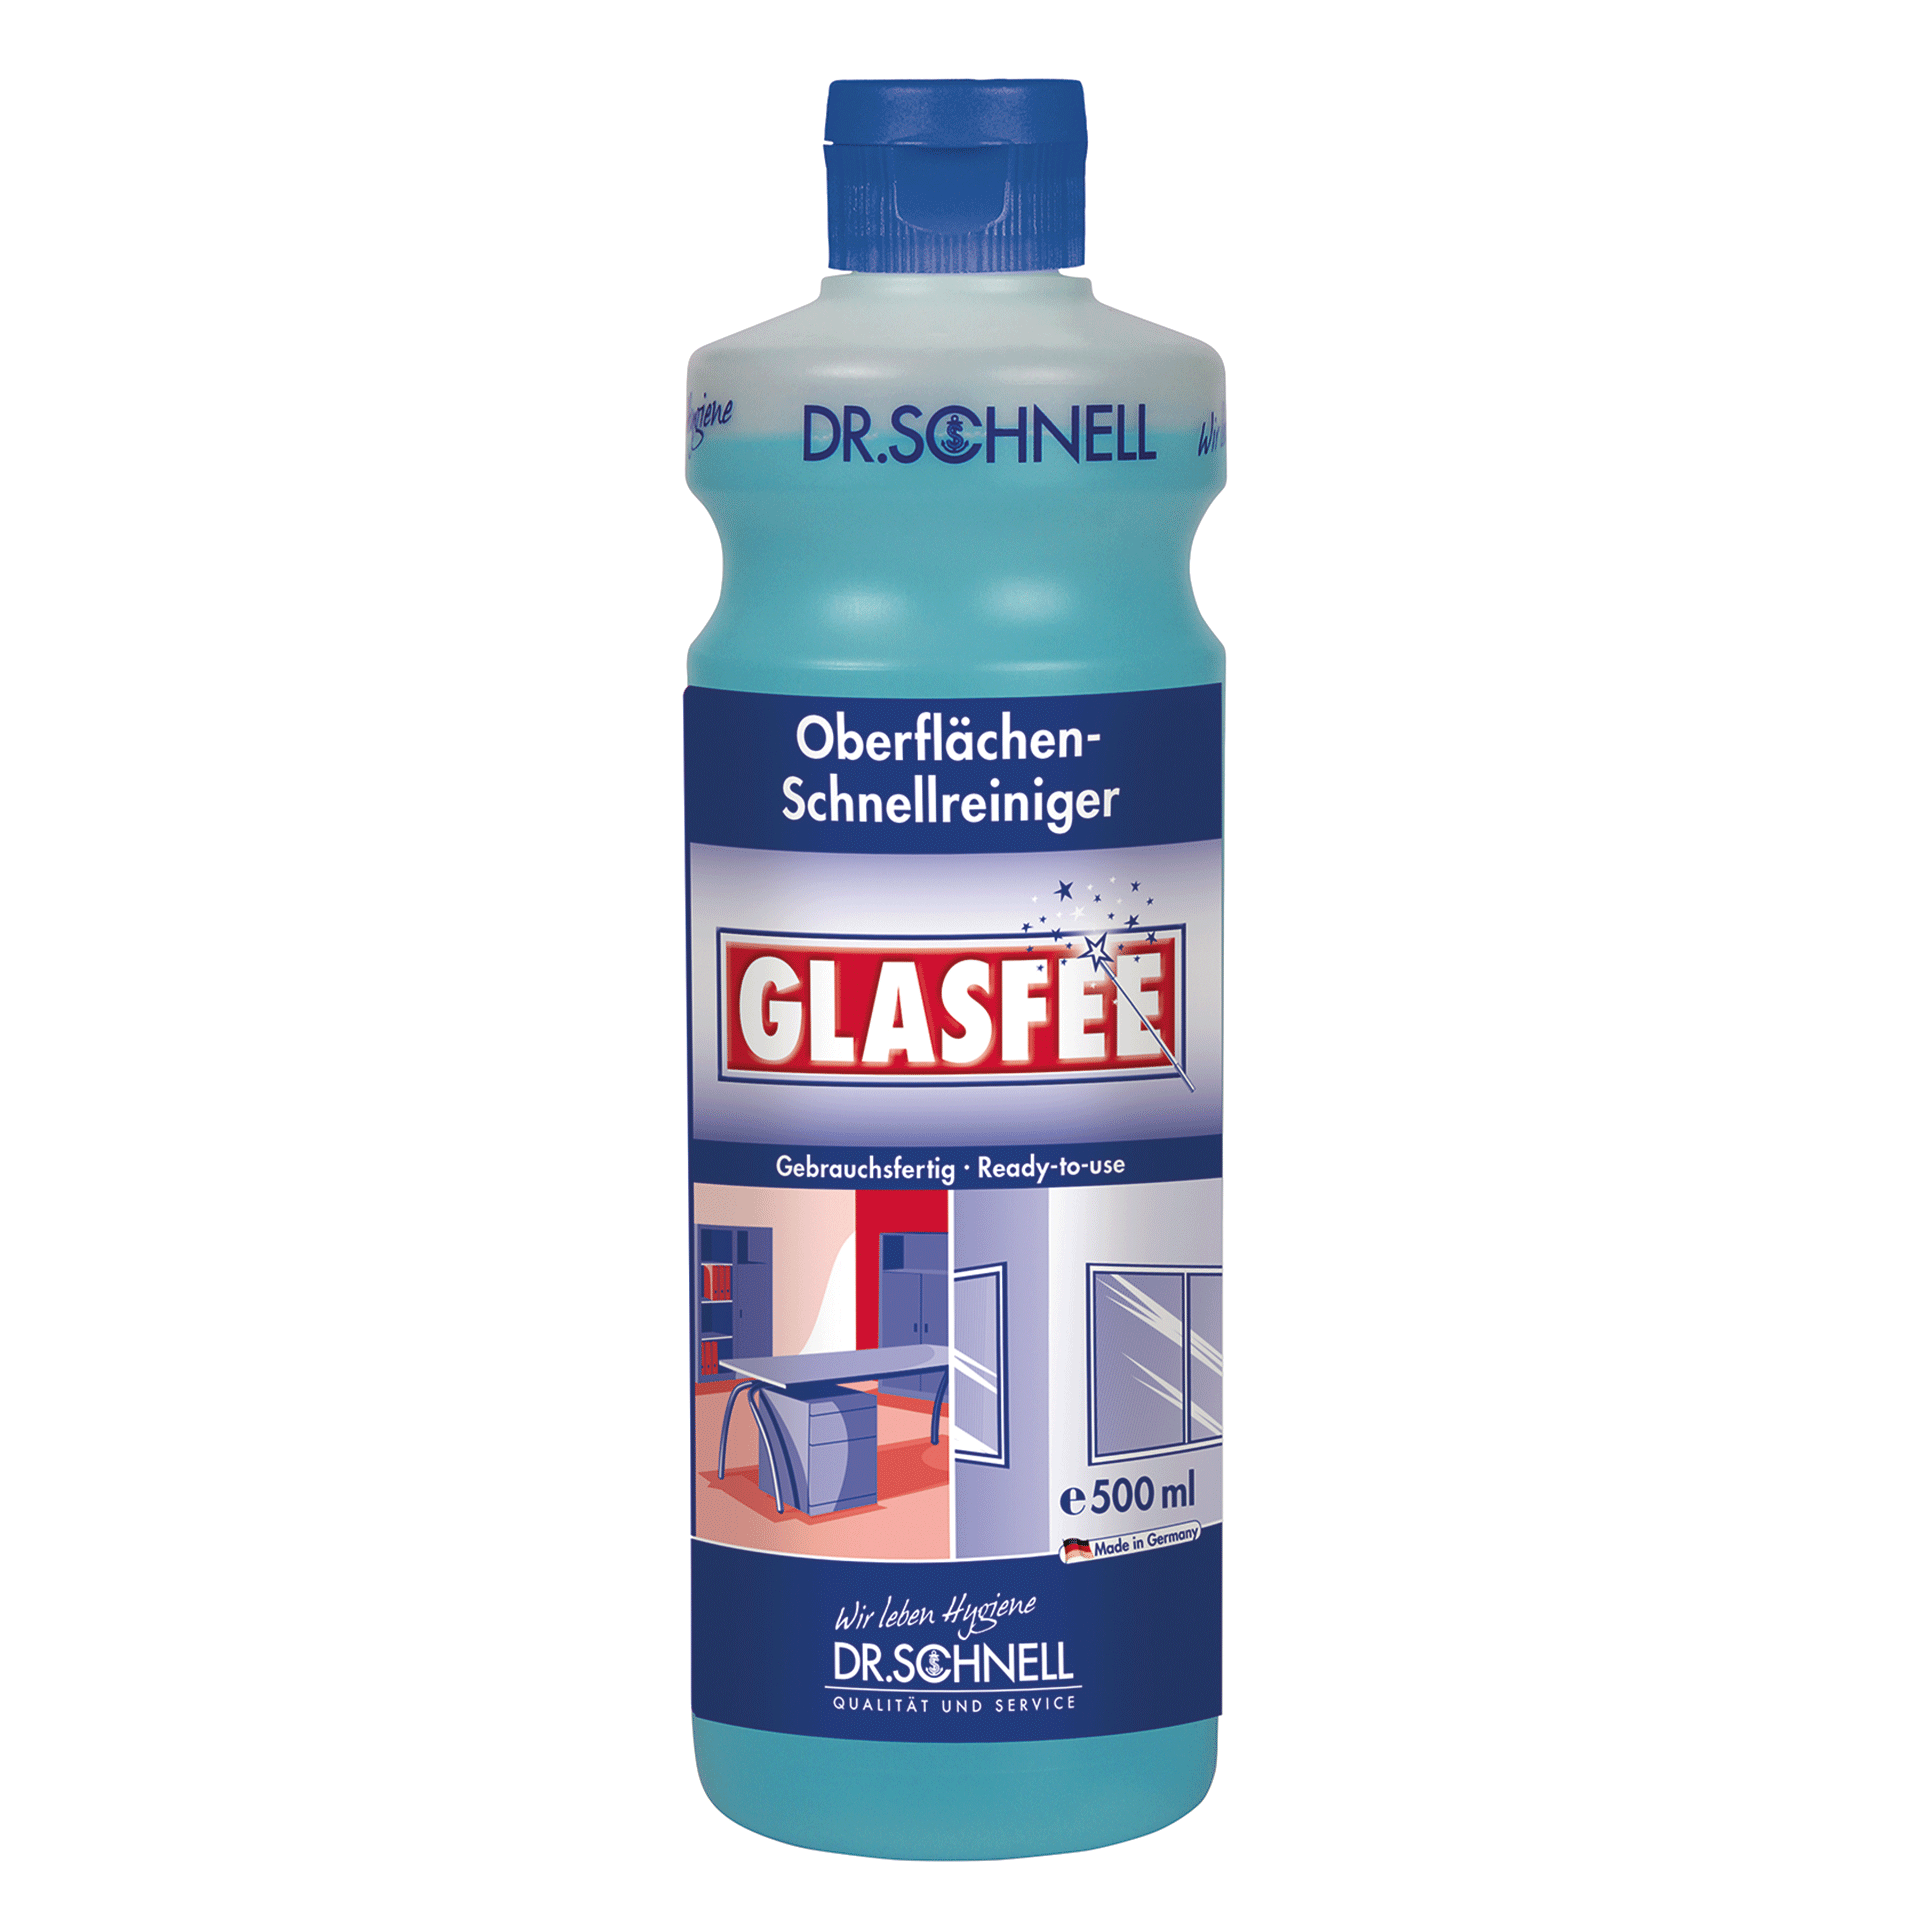 Dr. Schnell GLASFEE Oberflächen-Schnellreiniger 500 ml Flasche